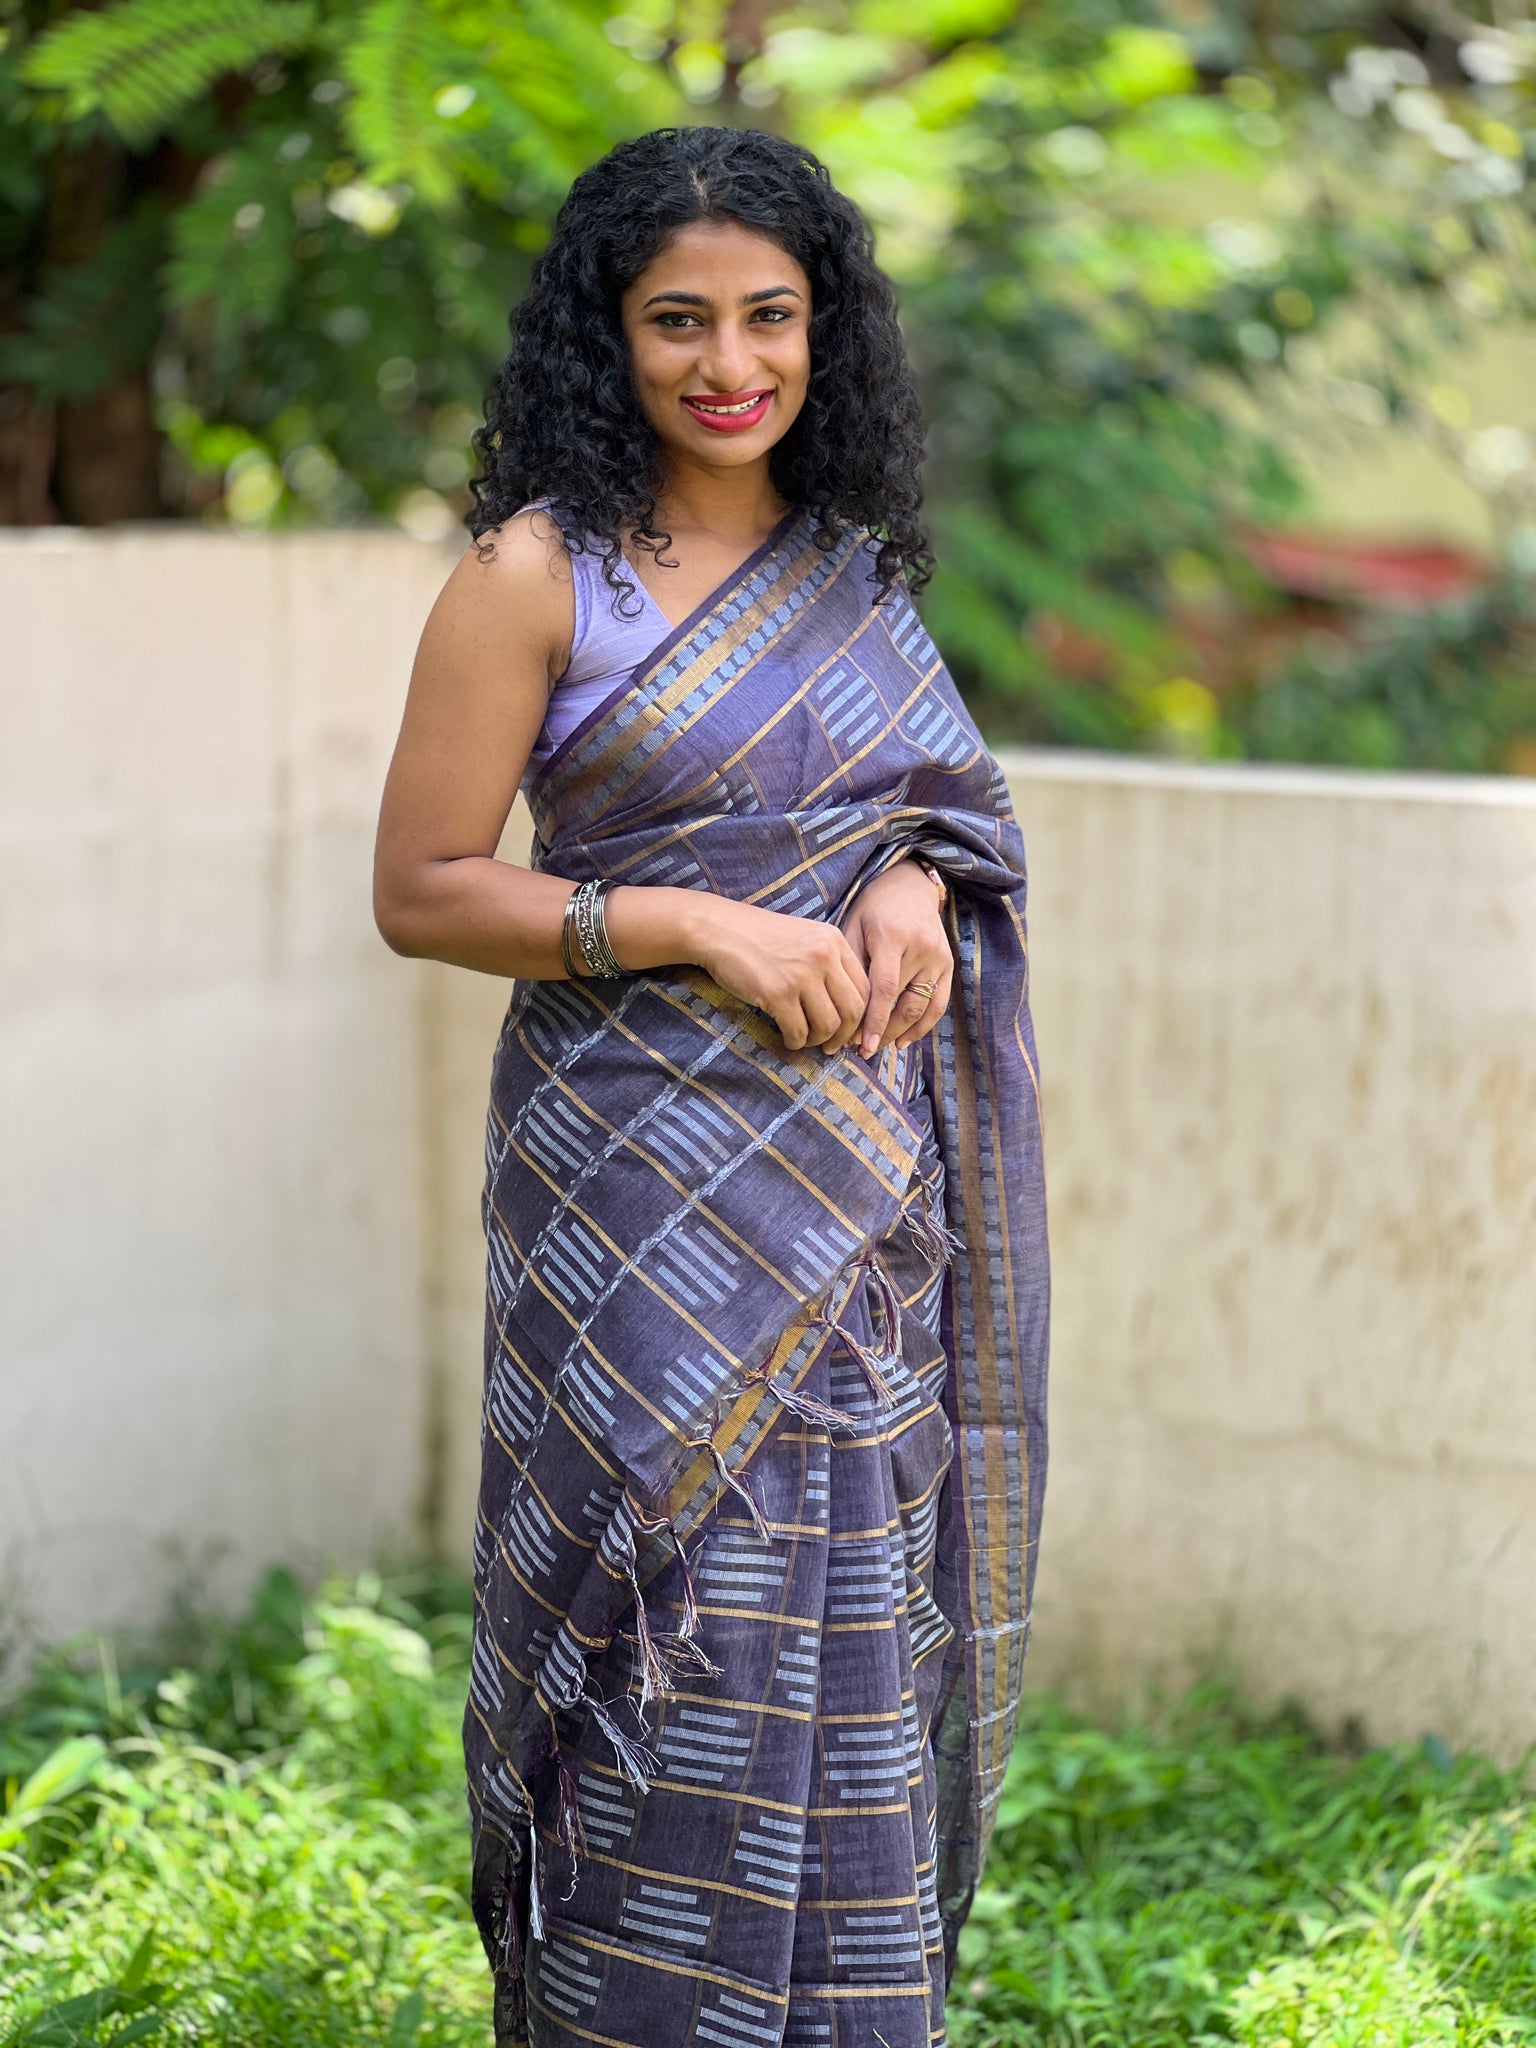 Powerloom kanchipuram sarees - Pure silk sarees and dresses | Facebook